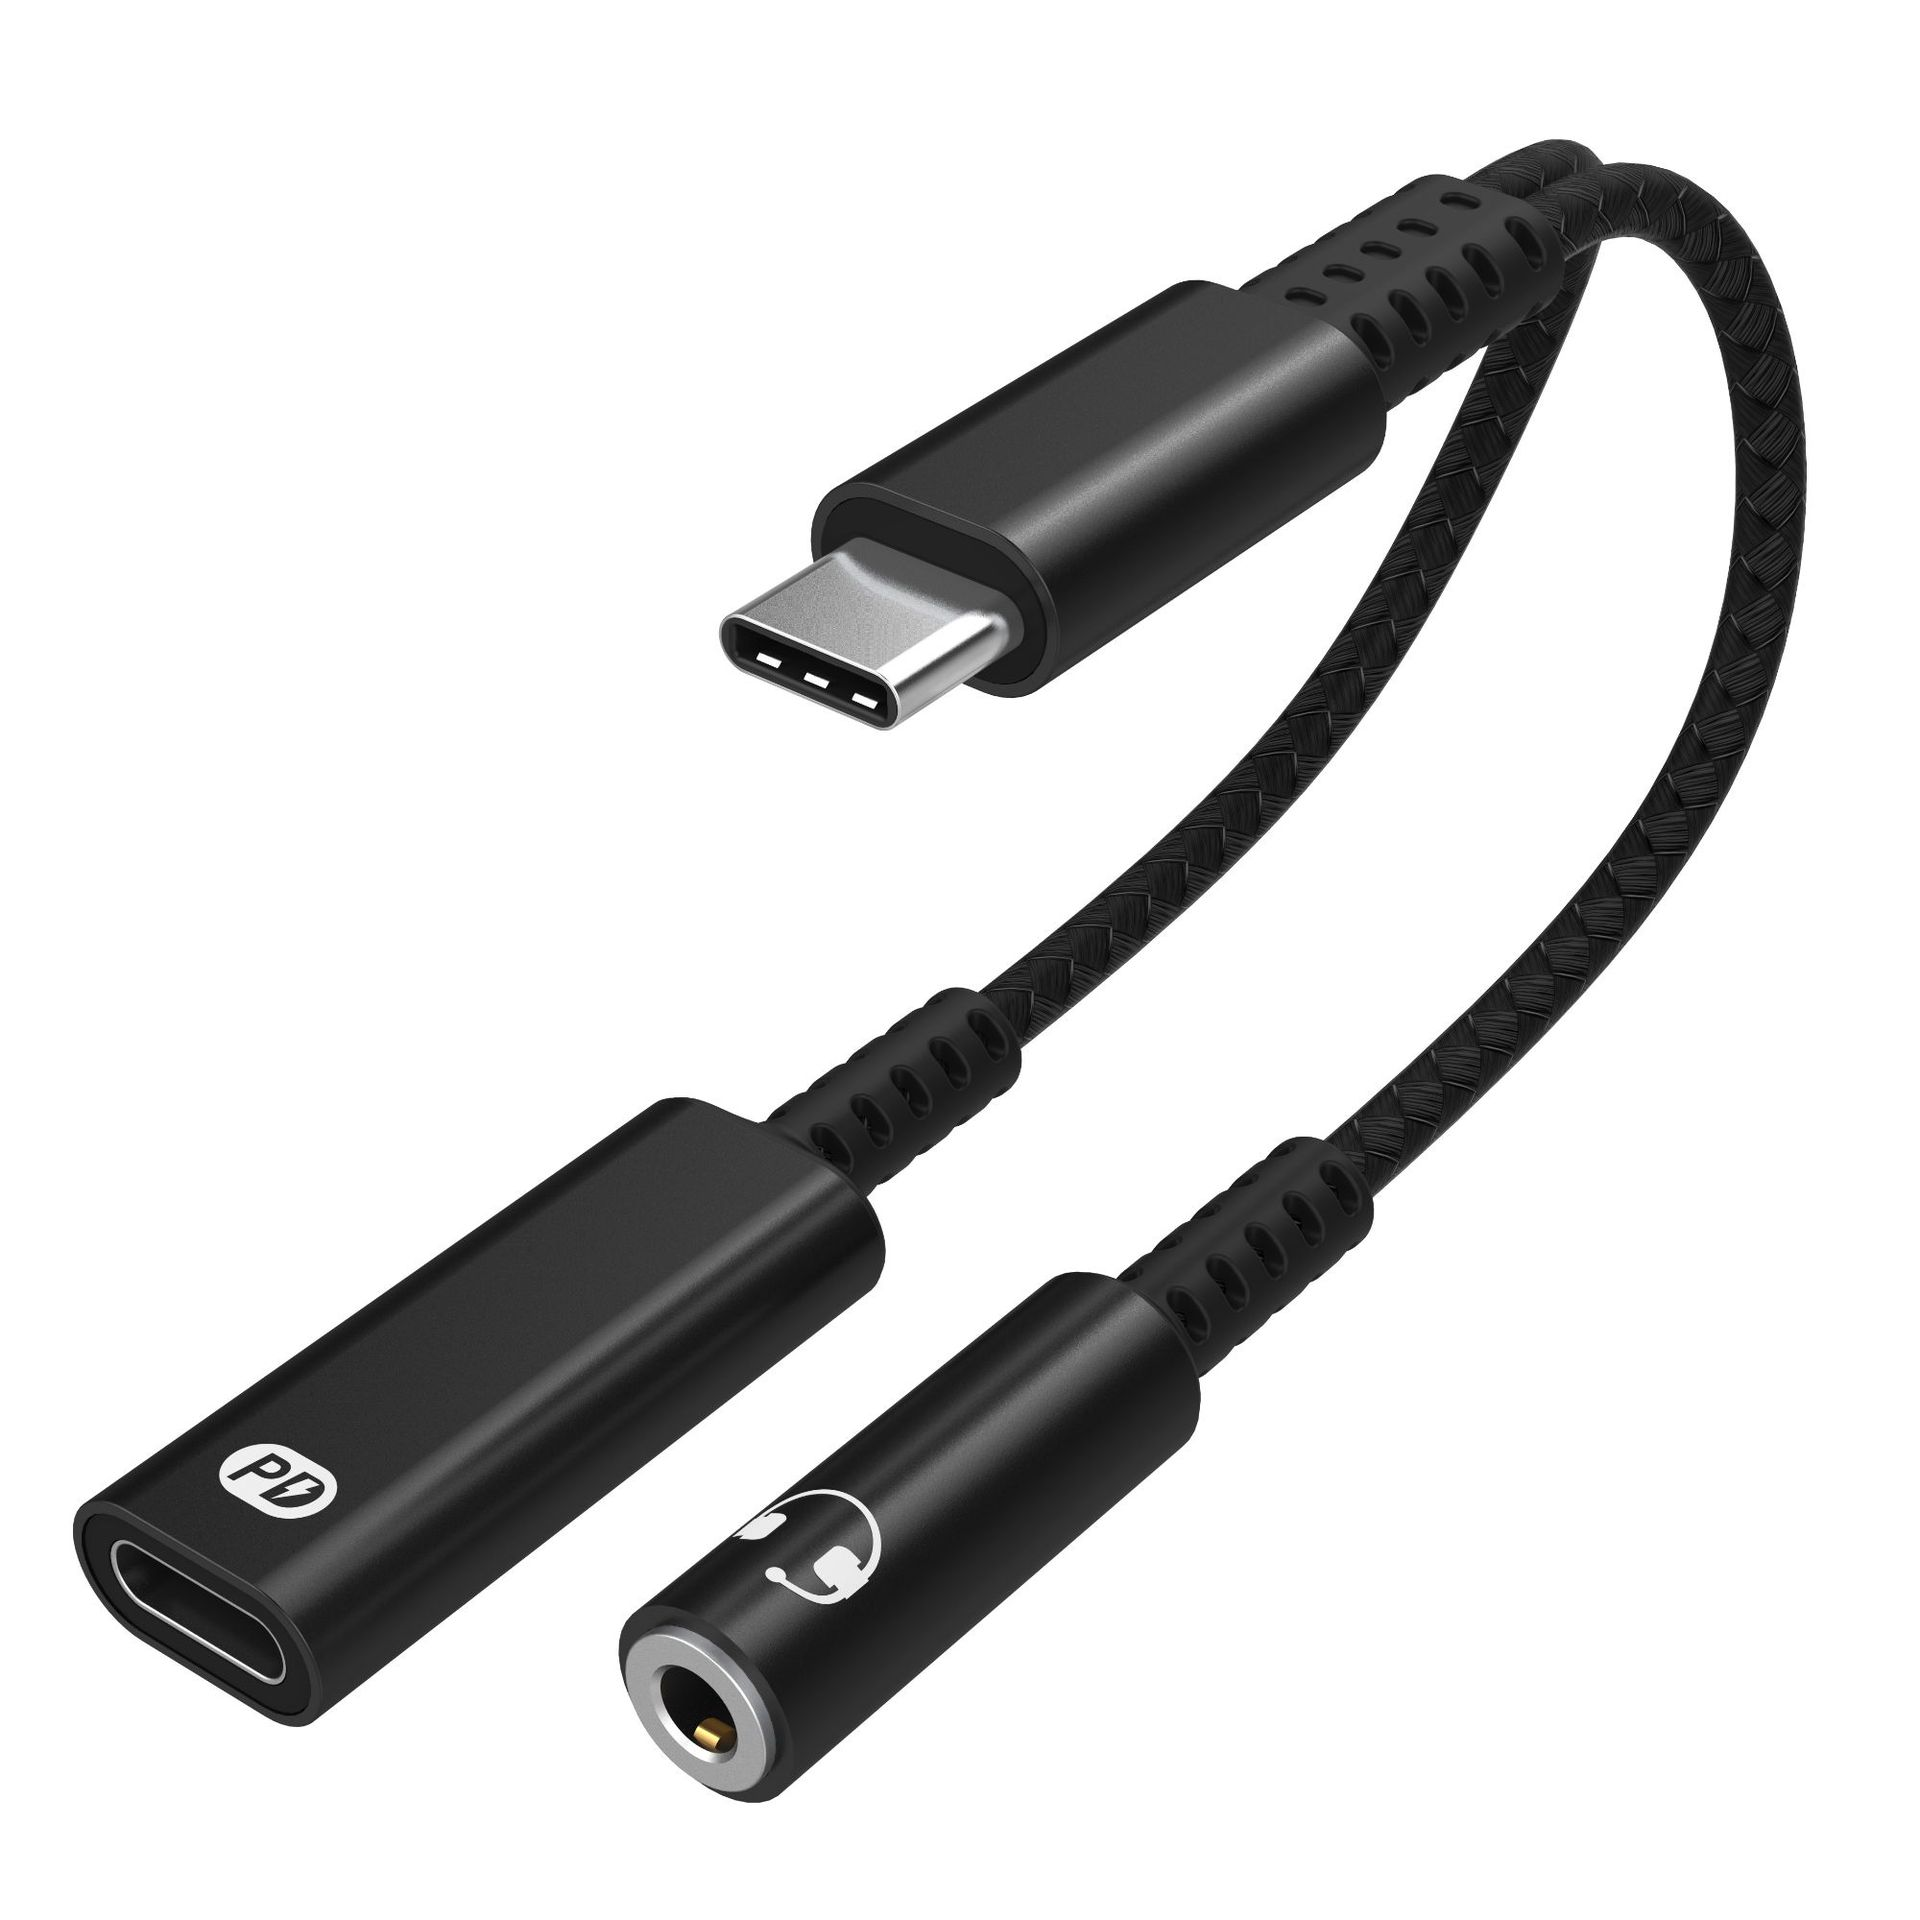 INF USB-C-Adapter für 3,5-mm-Kopfhörer und USB-C-Ladegerät Adapter